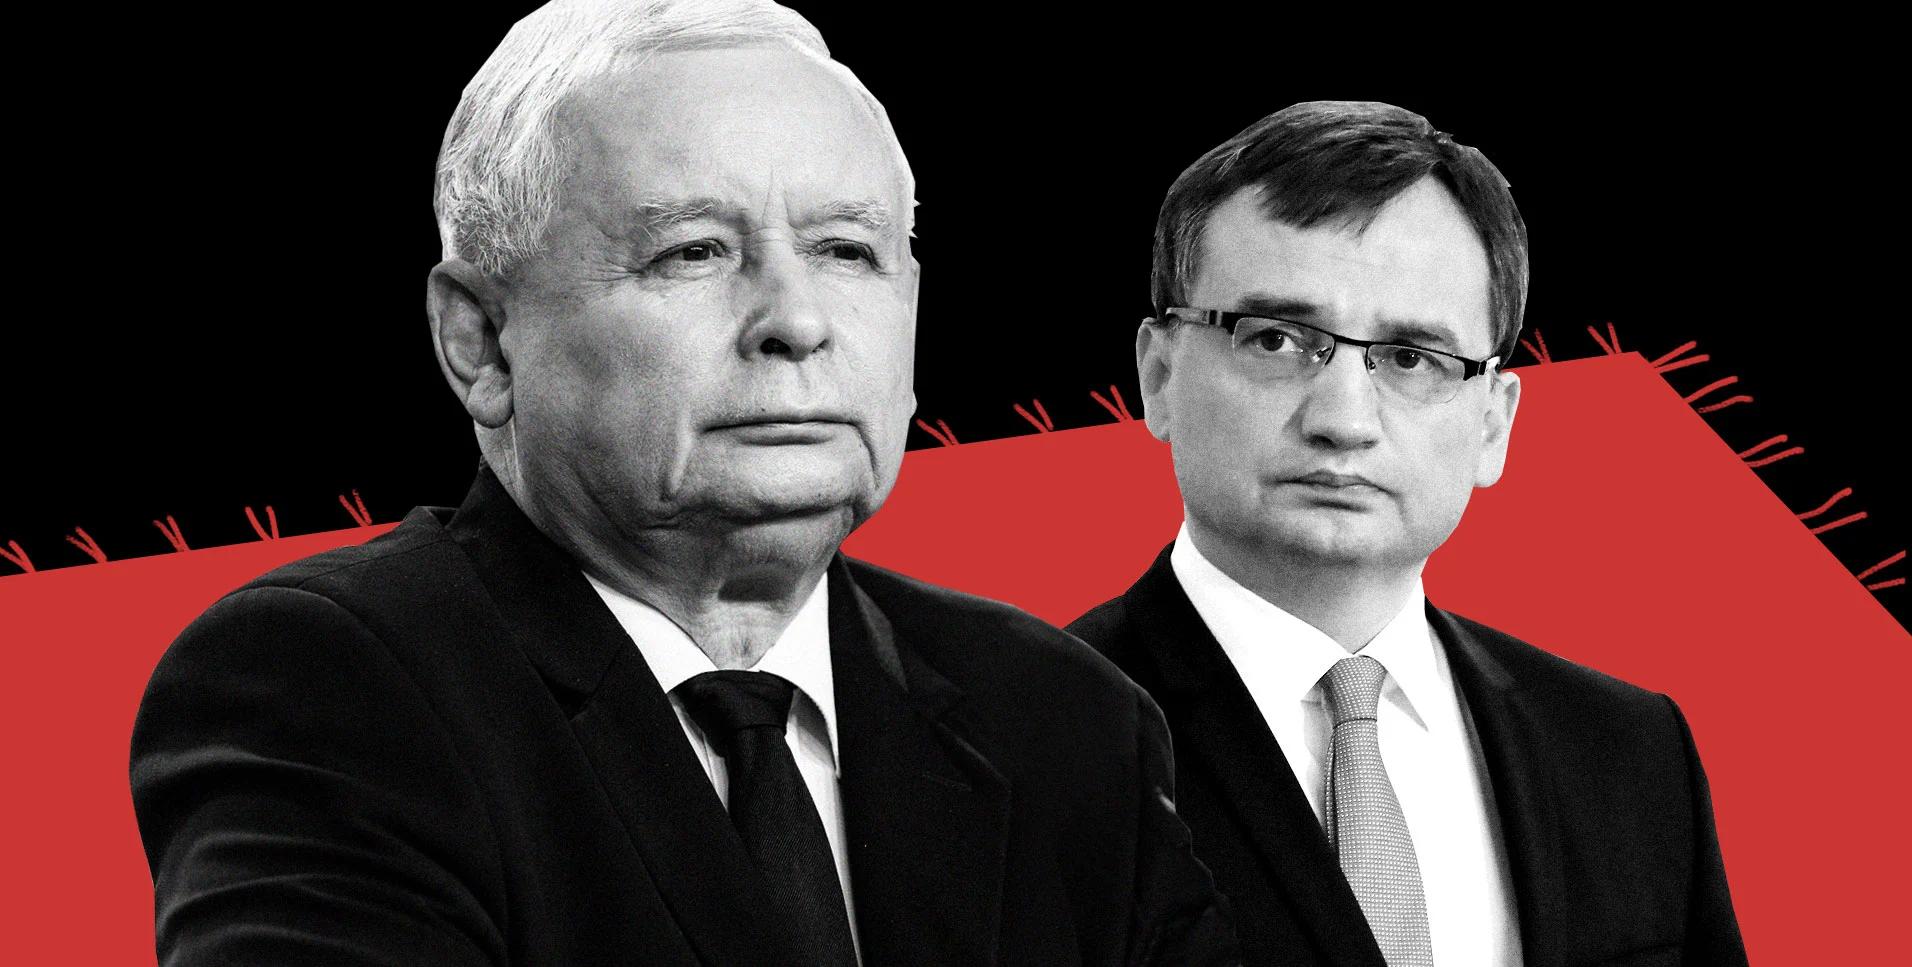 PiS i Kaczyński mieli plan rządu mniejszościowego - bez Ziobry